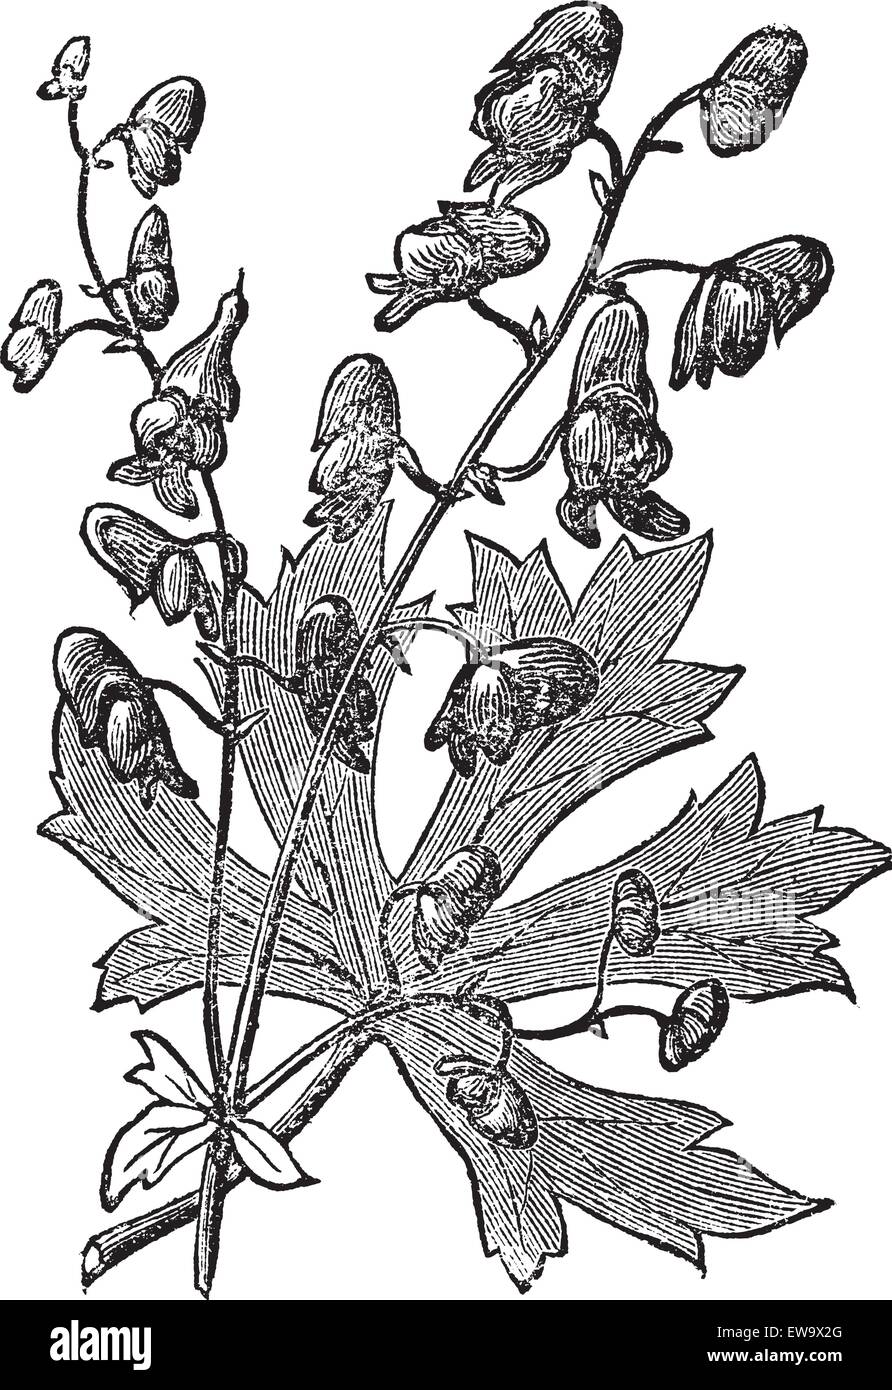 Monkshood oder Aconitum napellus gravierte Illustration. Auch bekannt als Aconit, Wolf's Bane, Fuzi, Mönchsblut oder Mönchshaube. Alte alte alte Pflanze Radierung Stock Vektor